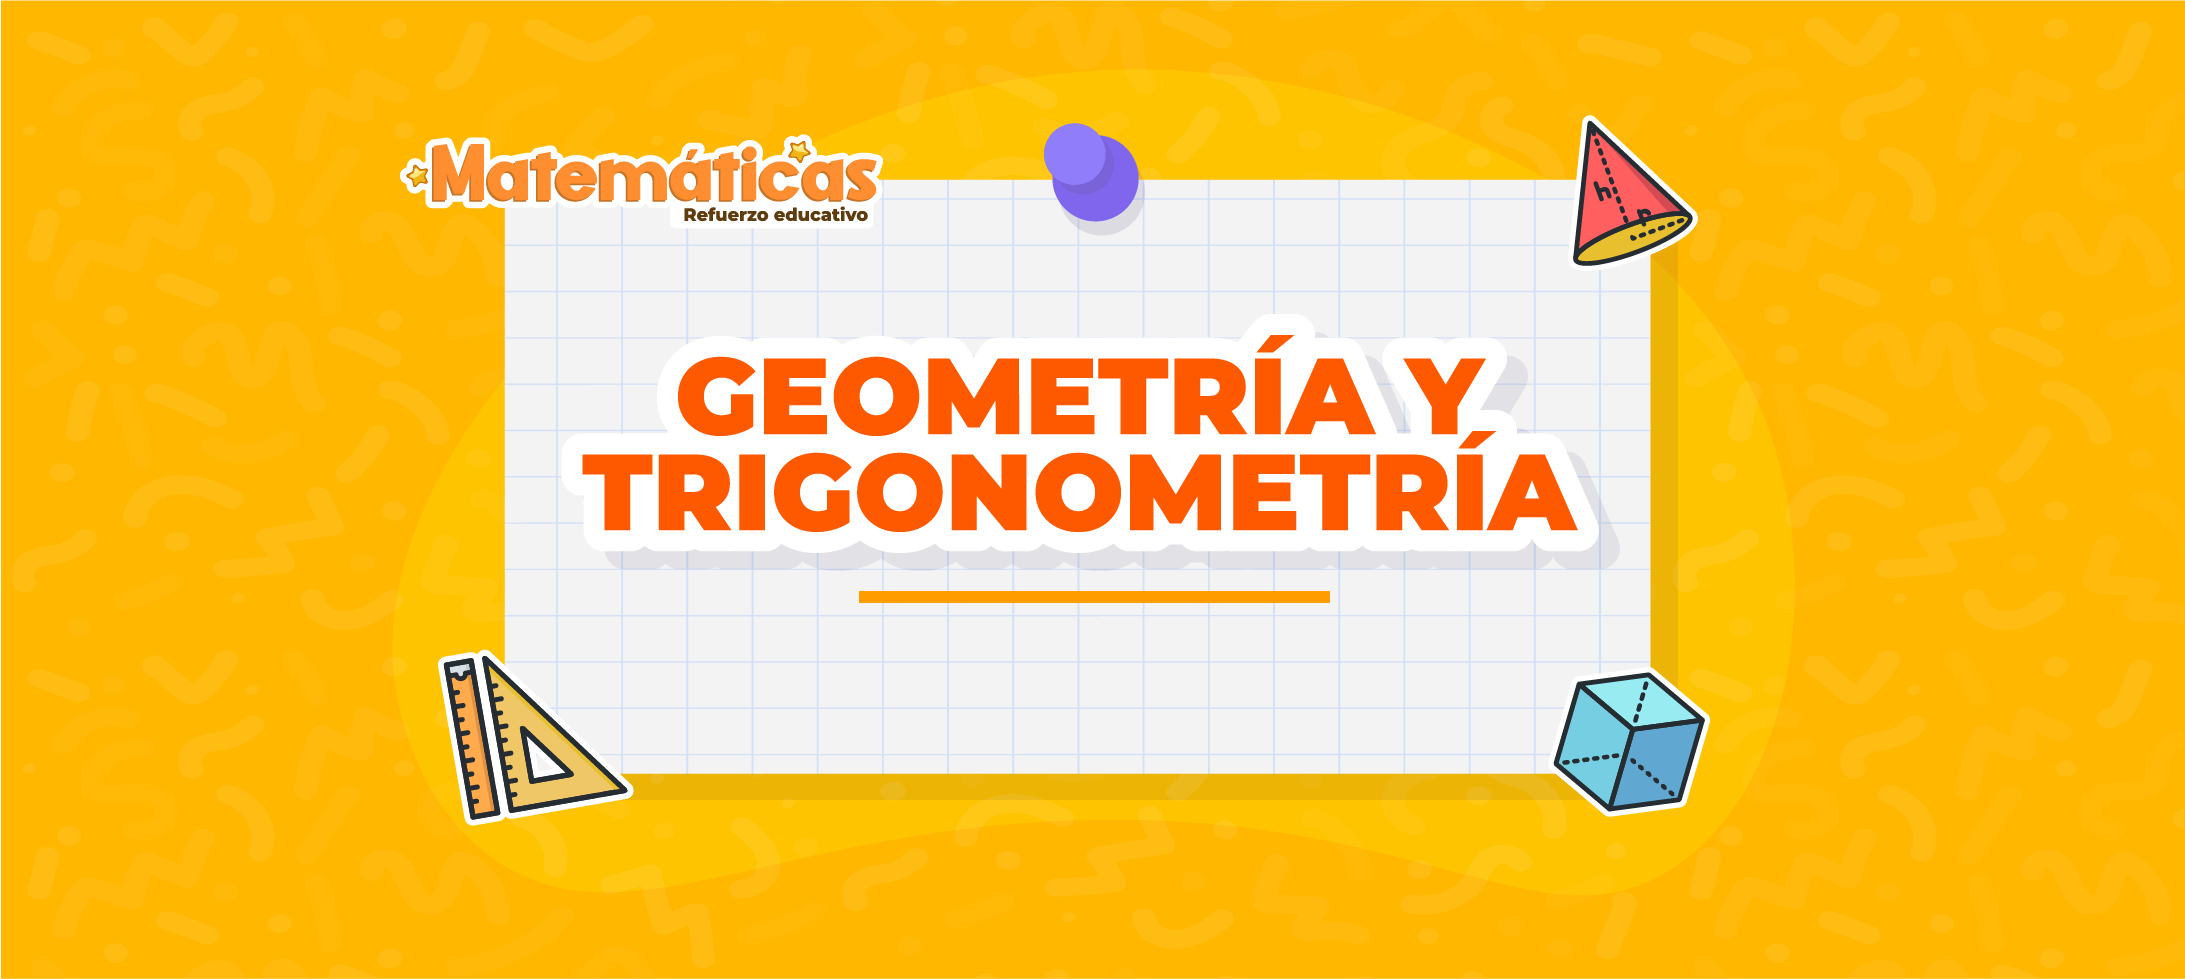 Geometría y Trigonometría: ¡Descubre las maravillas de las matemáticas!